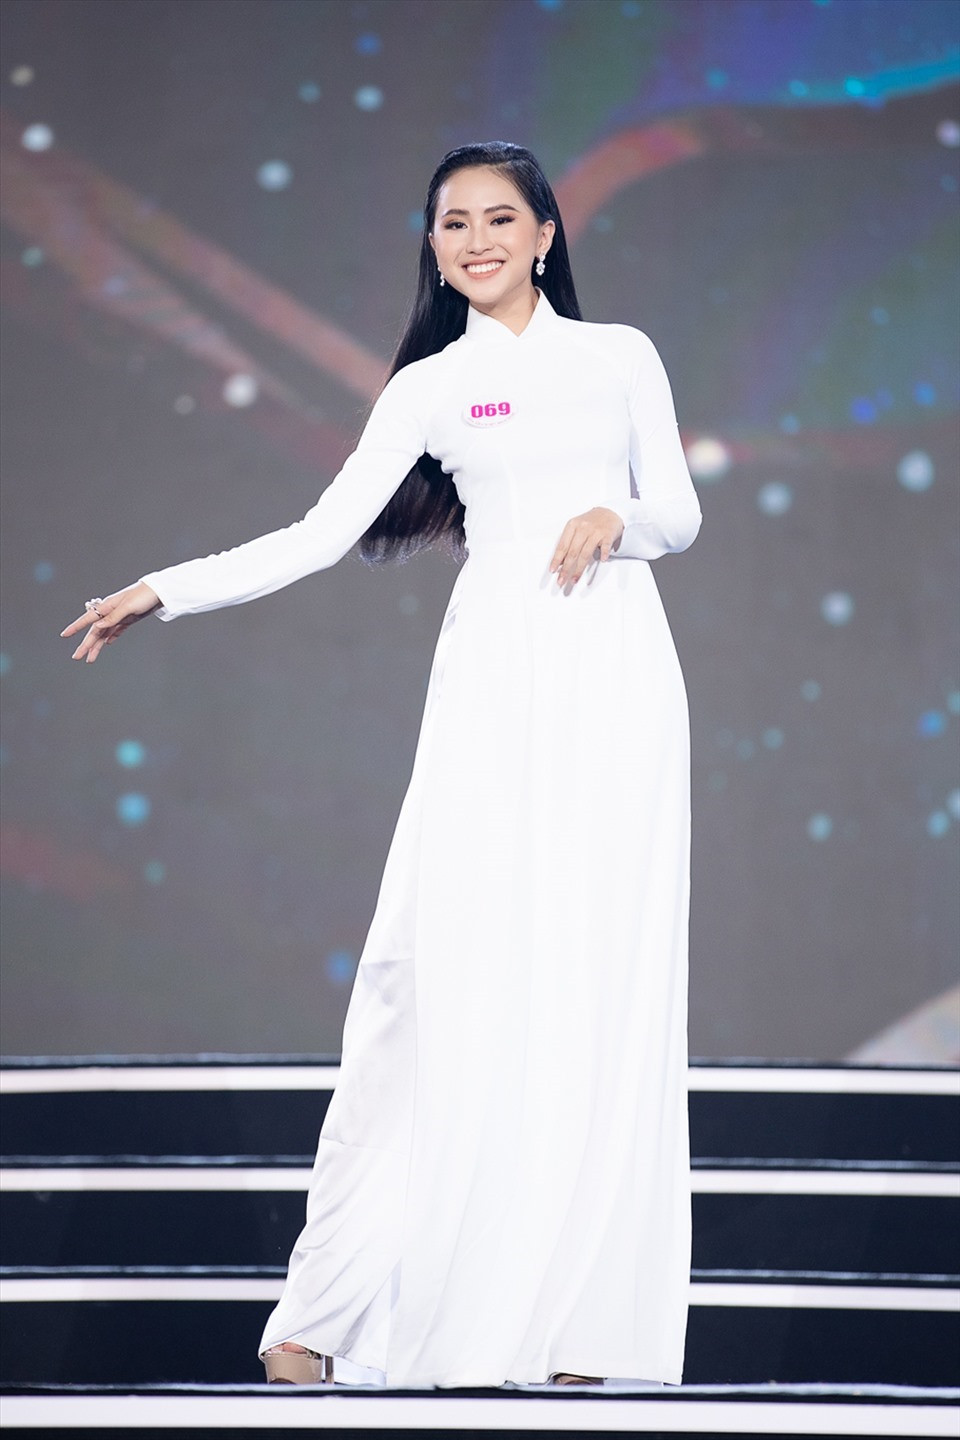 Phù Bảo Nghi sinh năm 2001, đến từ Thành phố Hồ Chí Minh là một trong những người đẹp tạo được ấn tượng khi bước ra khỏi cuộc thi Hoa hậu Việt Nam 2020.